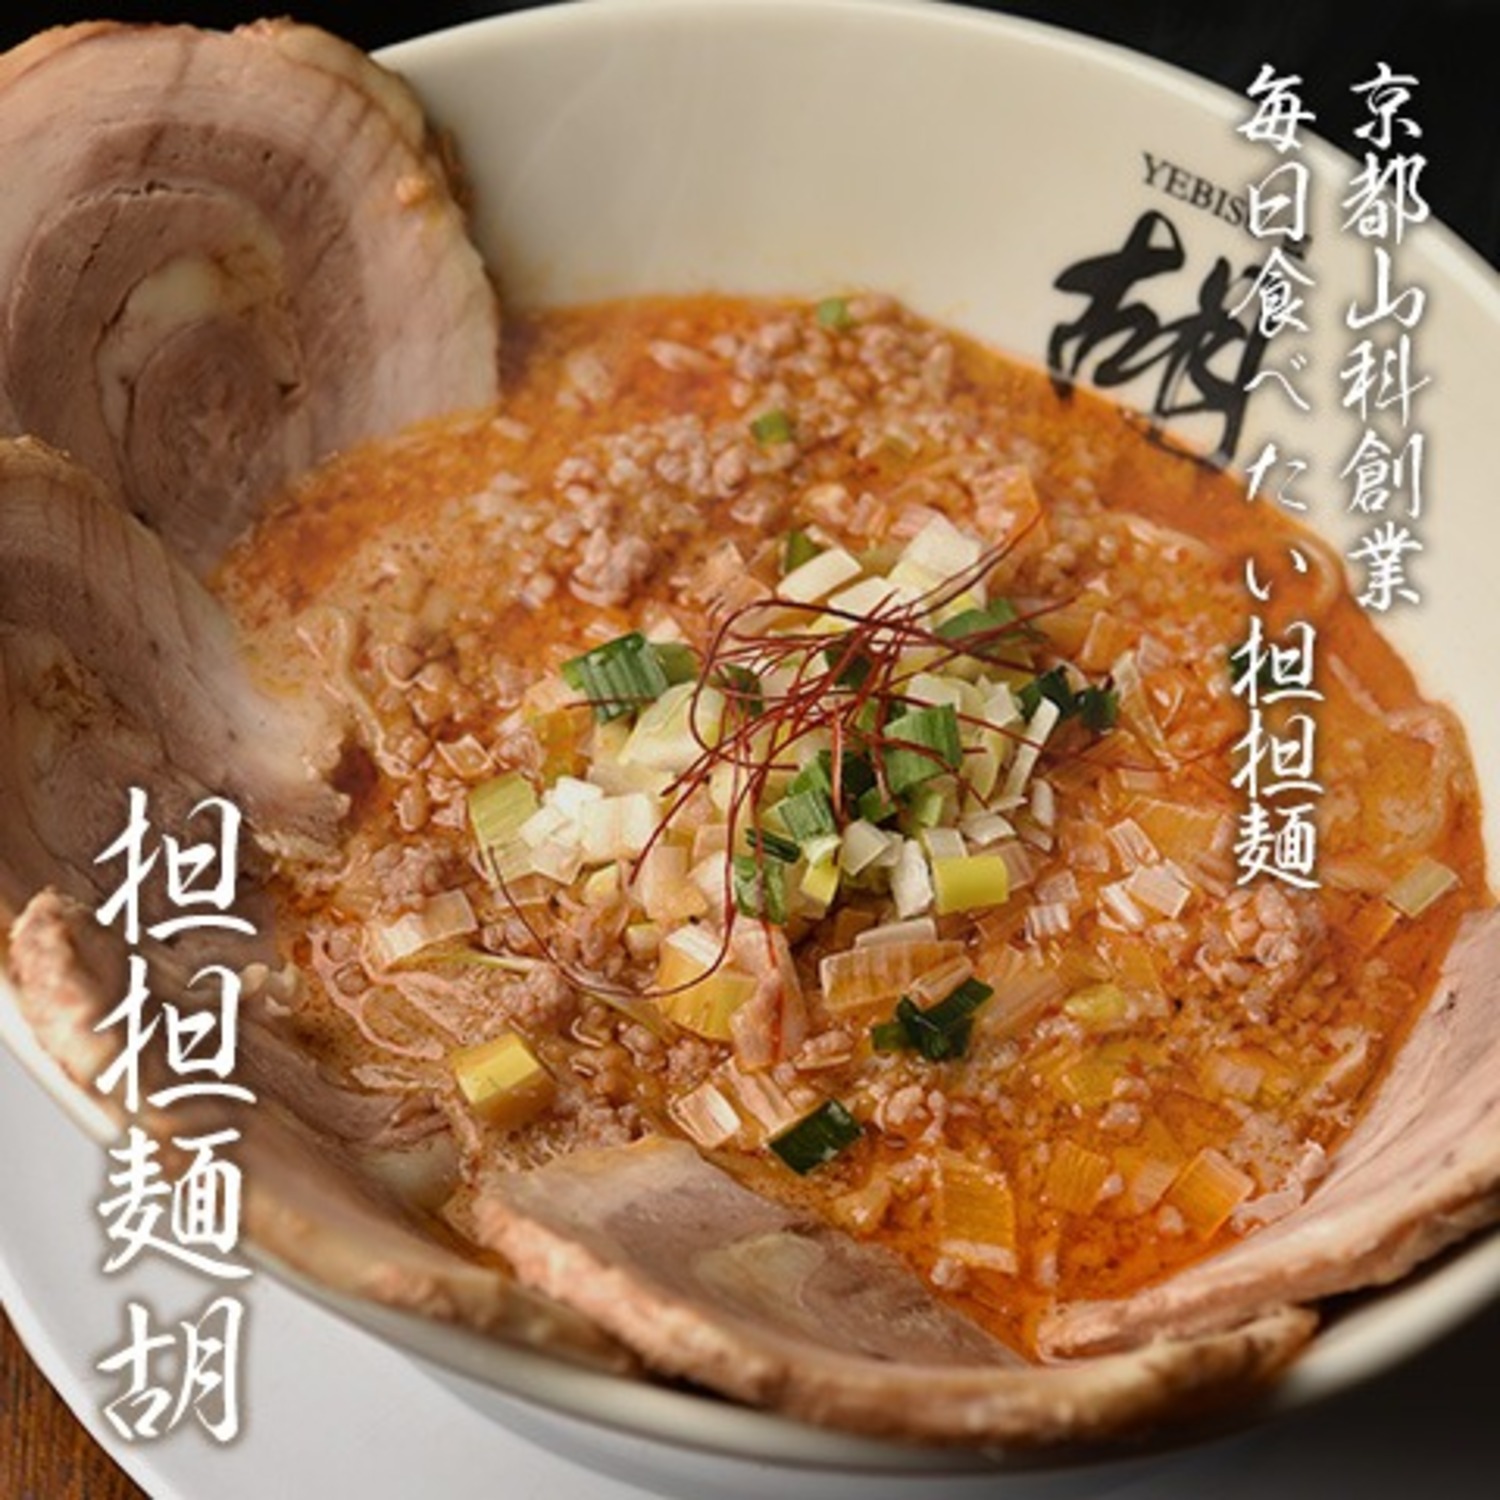 京都山科創業、毎日食べたい担担麺「担担麺胡」